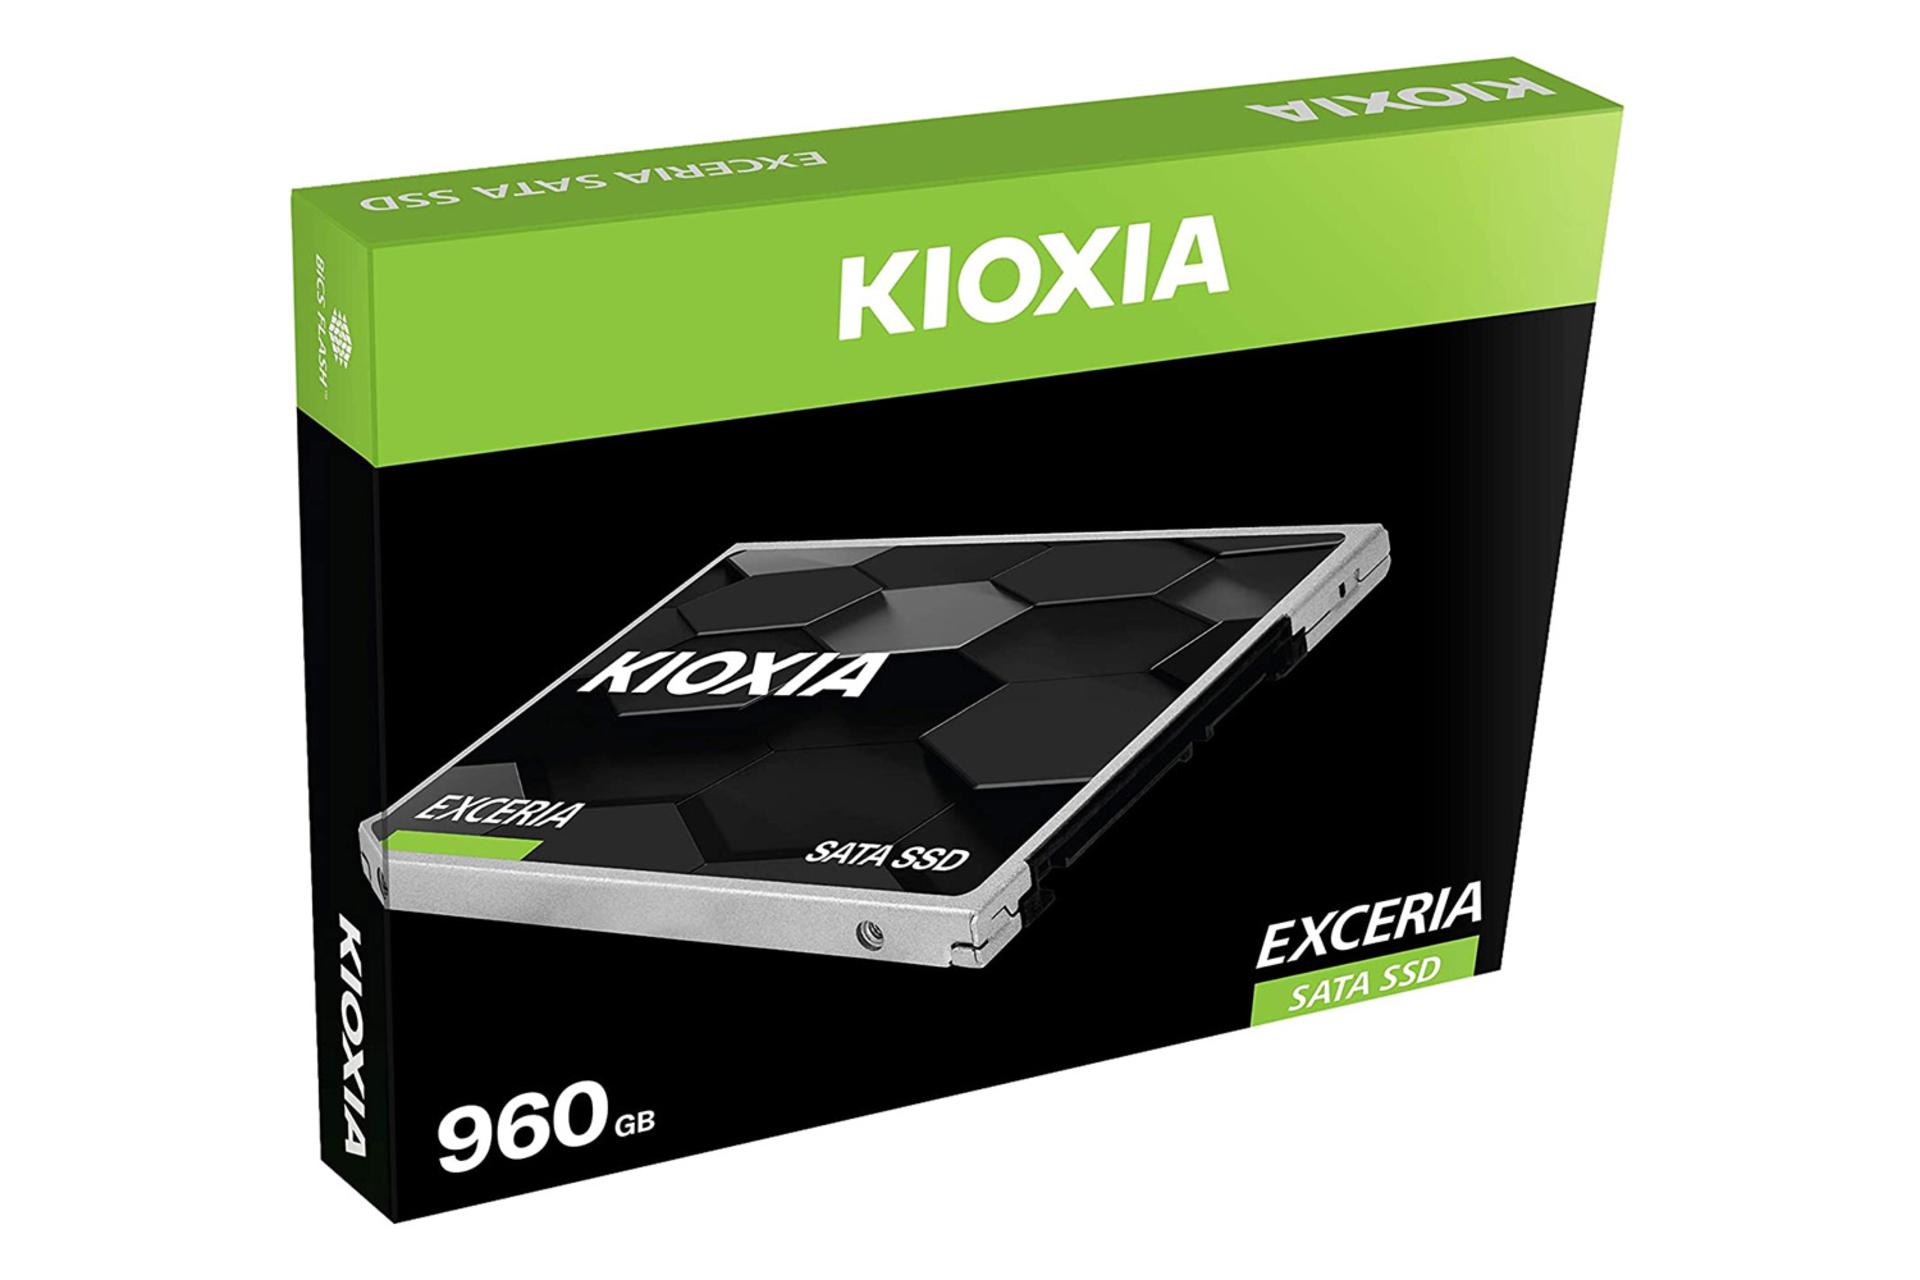 جعبه SSD کیوکسیا EXCERIA SATA 2.5 Inch ظرفیت 960 گیگابایت